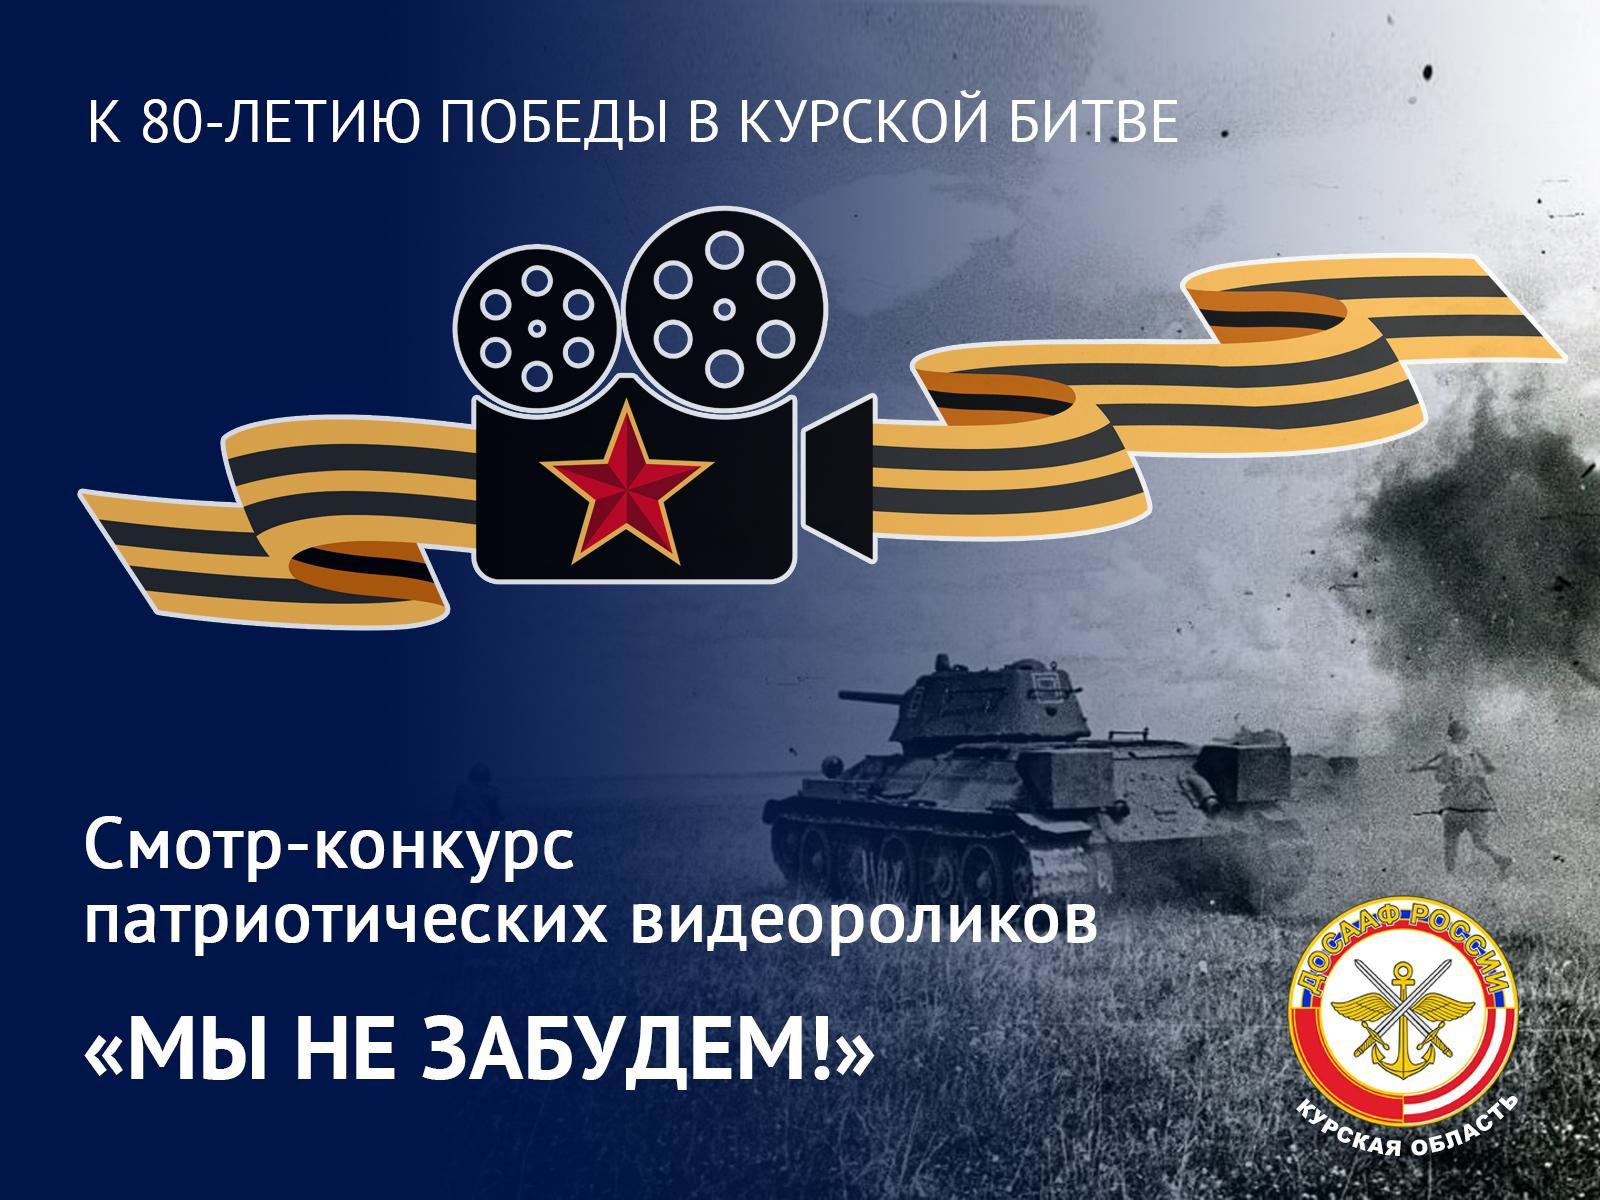 «Мы не забудем!», посвященный 80-летию победы в Курской битве.